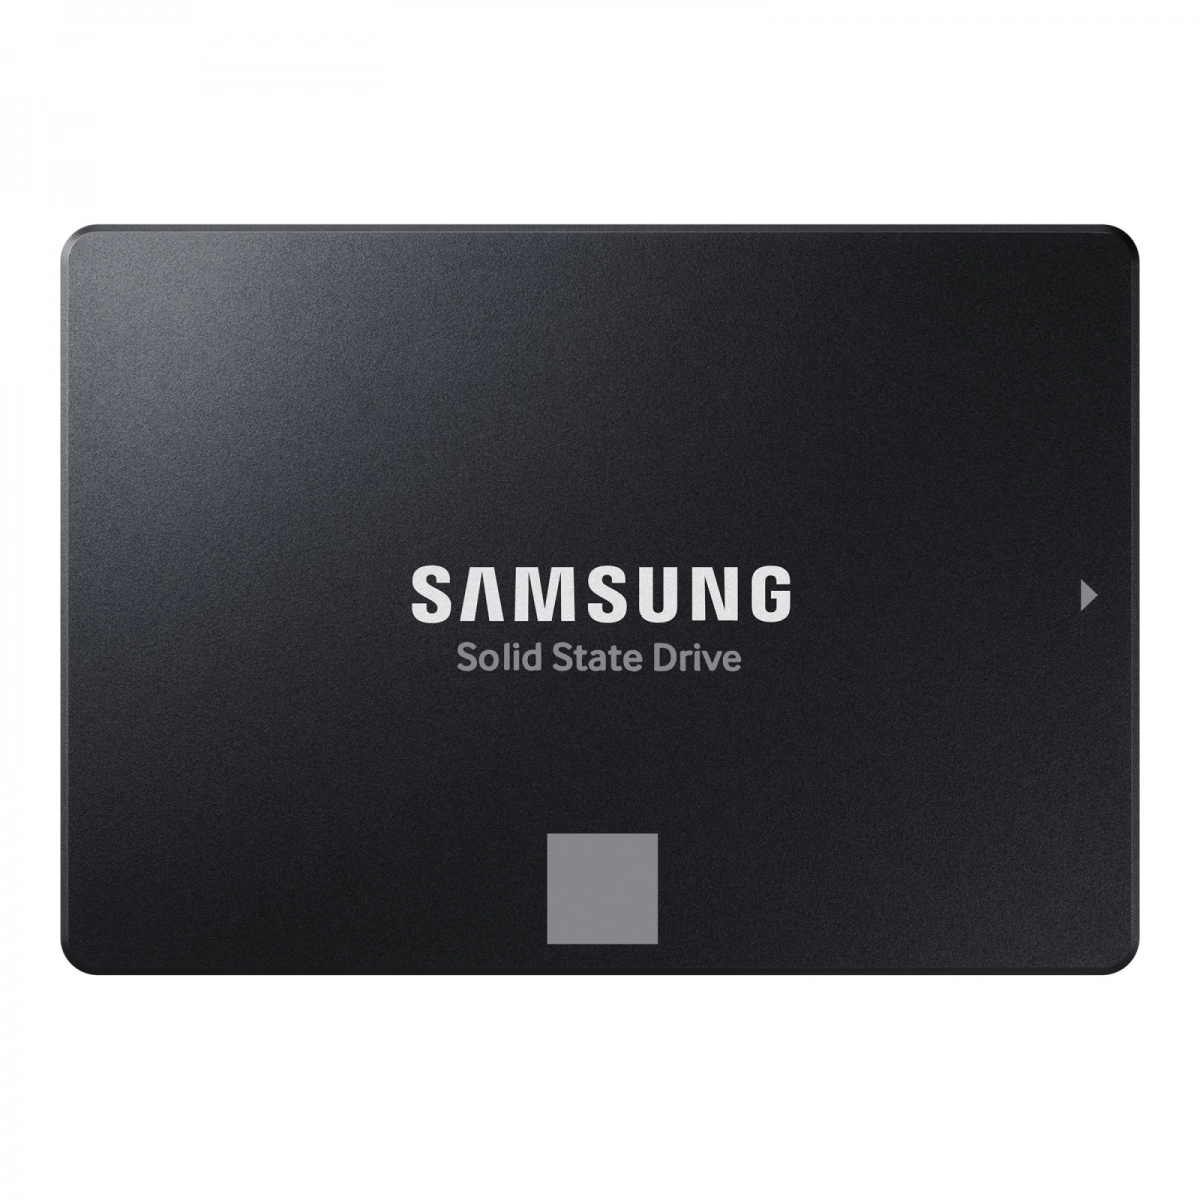 Notebook-Festplatte 500GB, SSD SATA3 MLC für DELL Latitude E5550